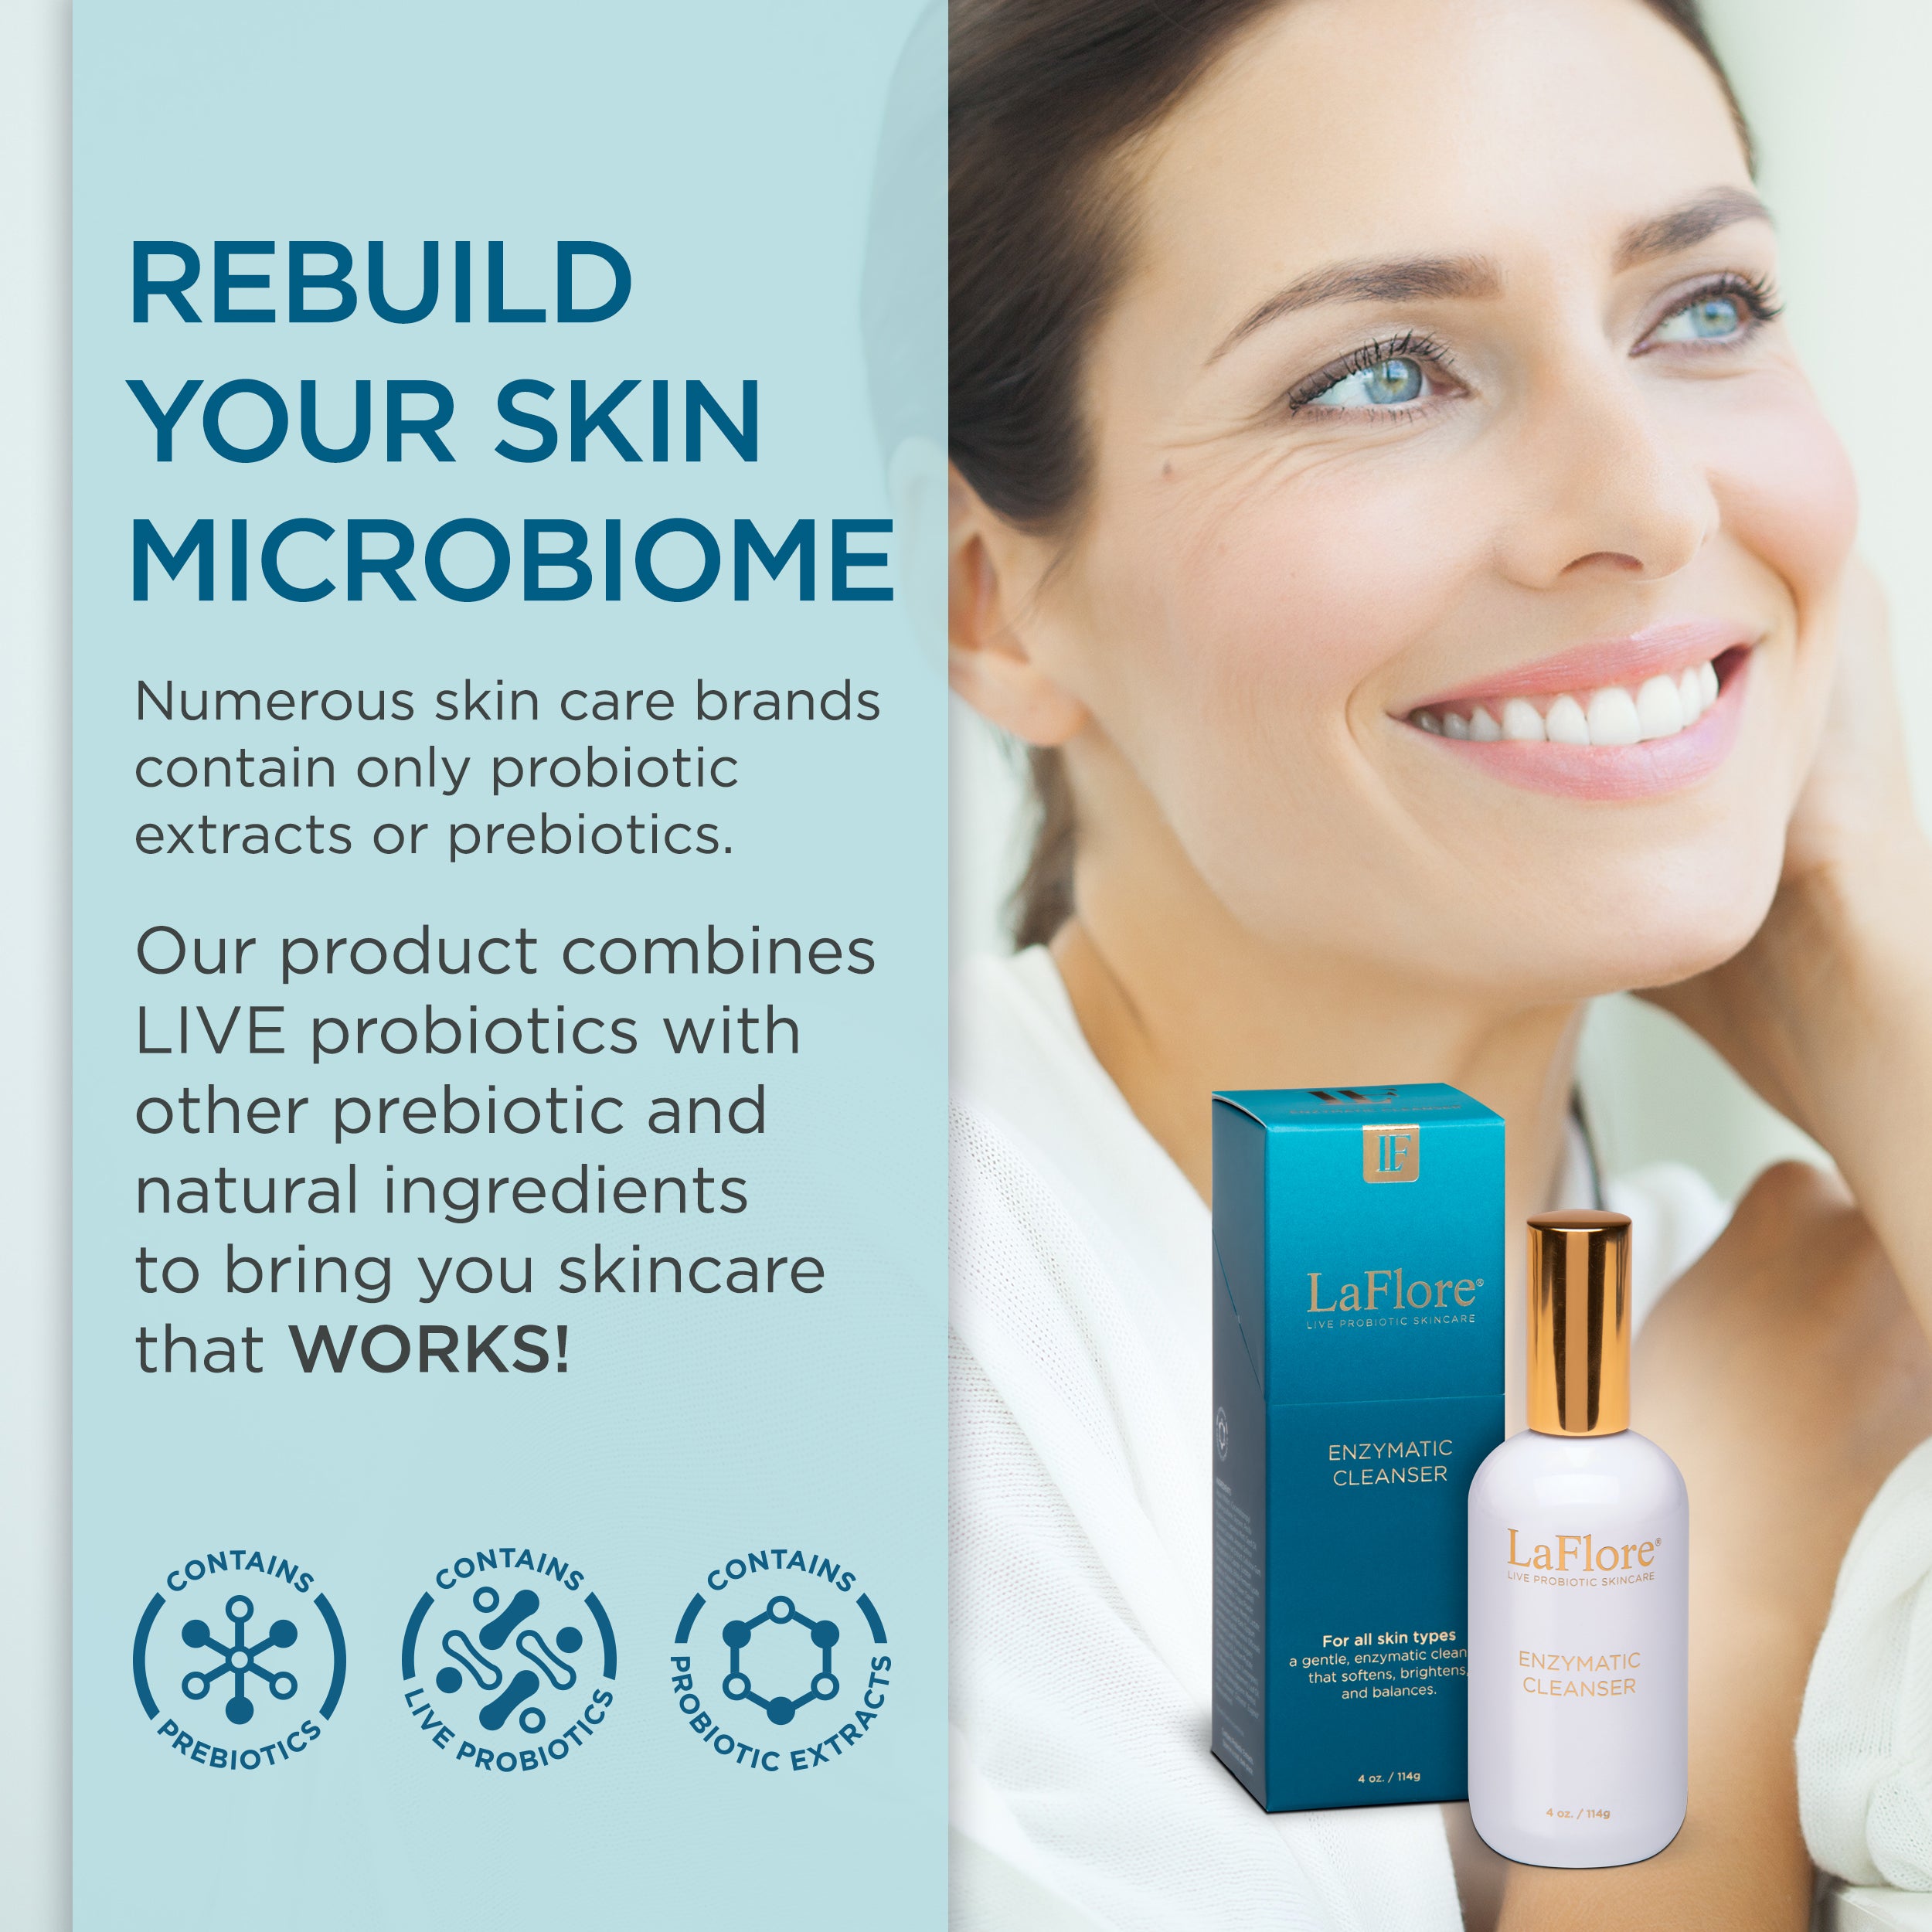 LaFlore Enzymatic Cleanser - Live Probiotic Skin care